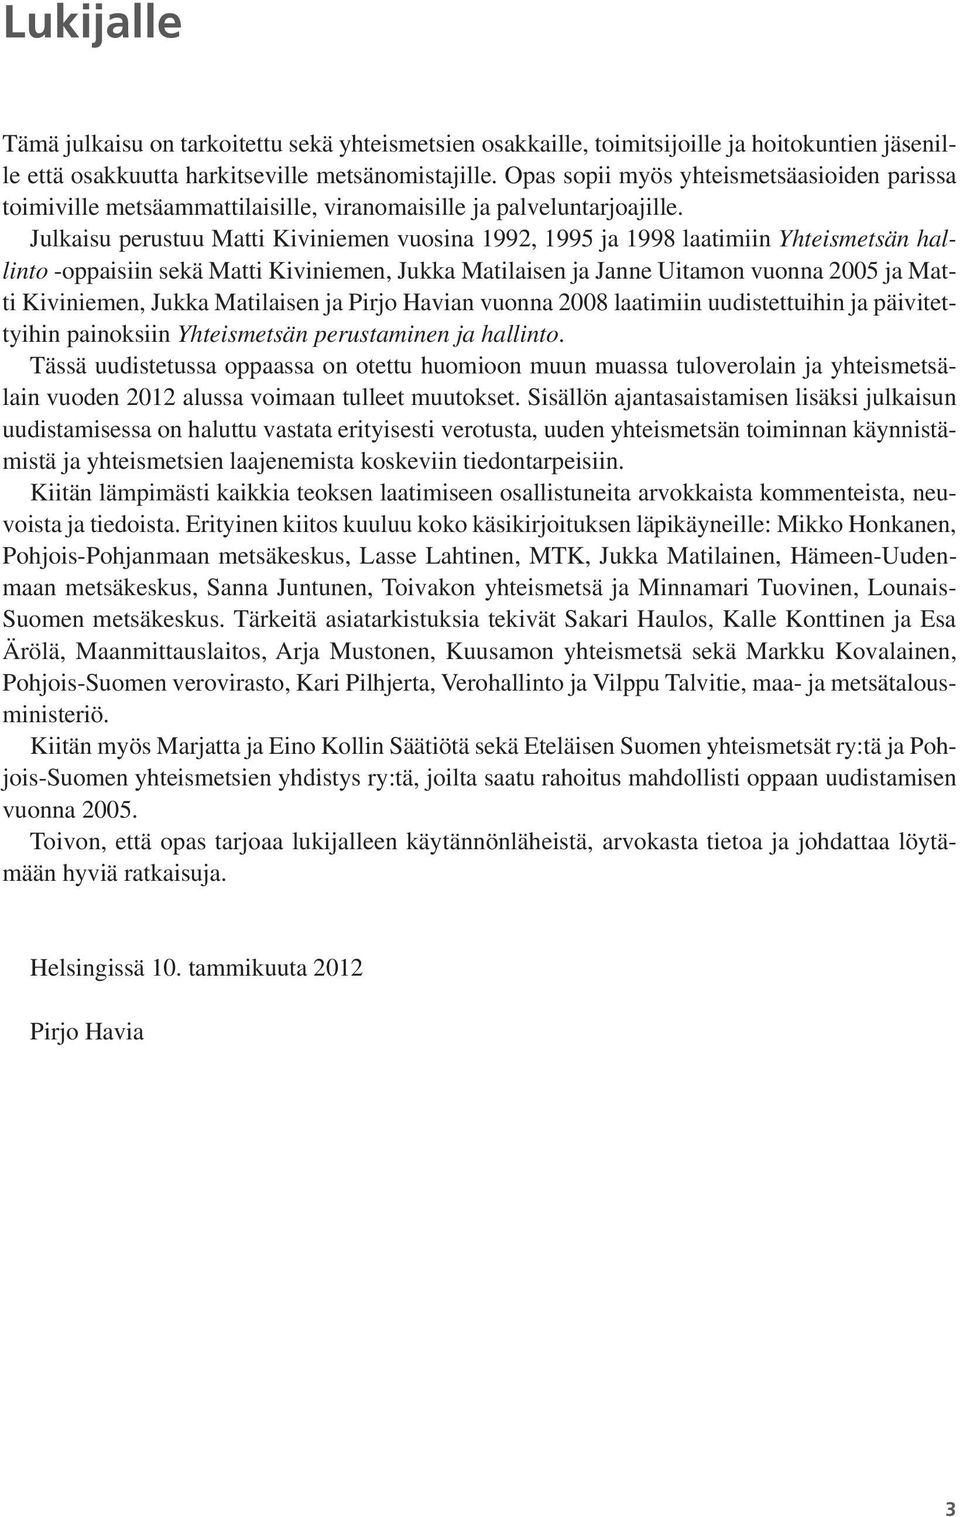 Julkaisu perustuu Matti Kiviniemen vuosina 1992, 1995 ja 1998 laatimiin Yhteismetsän hallinto -oppaisiin sekä Matti Kiviniemen, Jukka Matilaisen ja Janne Uitamon vuonna 2005 ja Matti Kiviniemen,